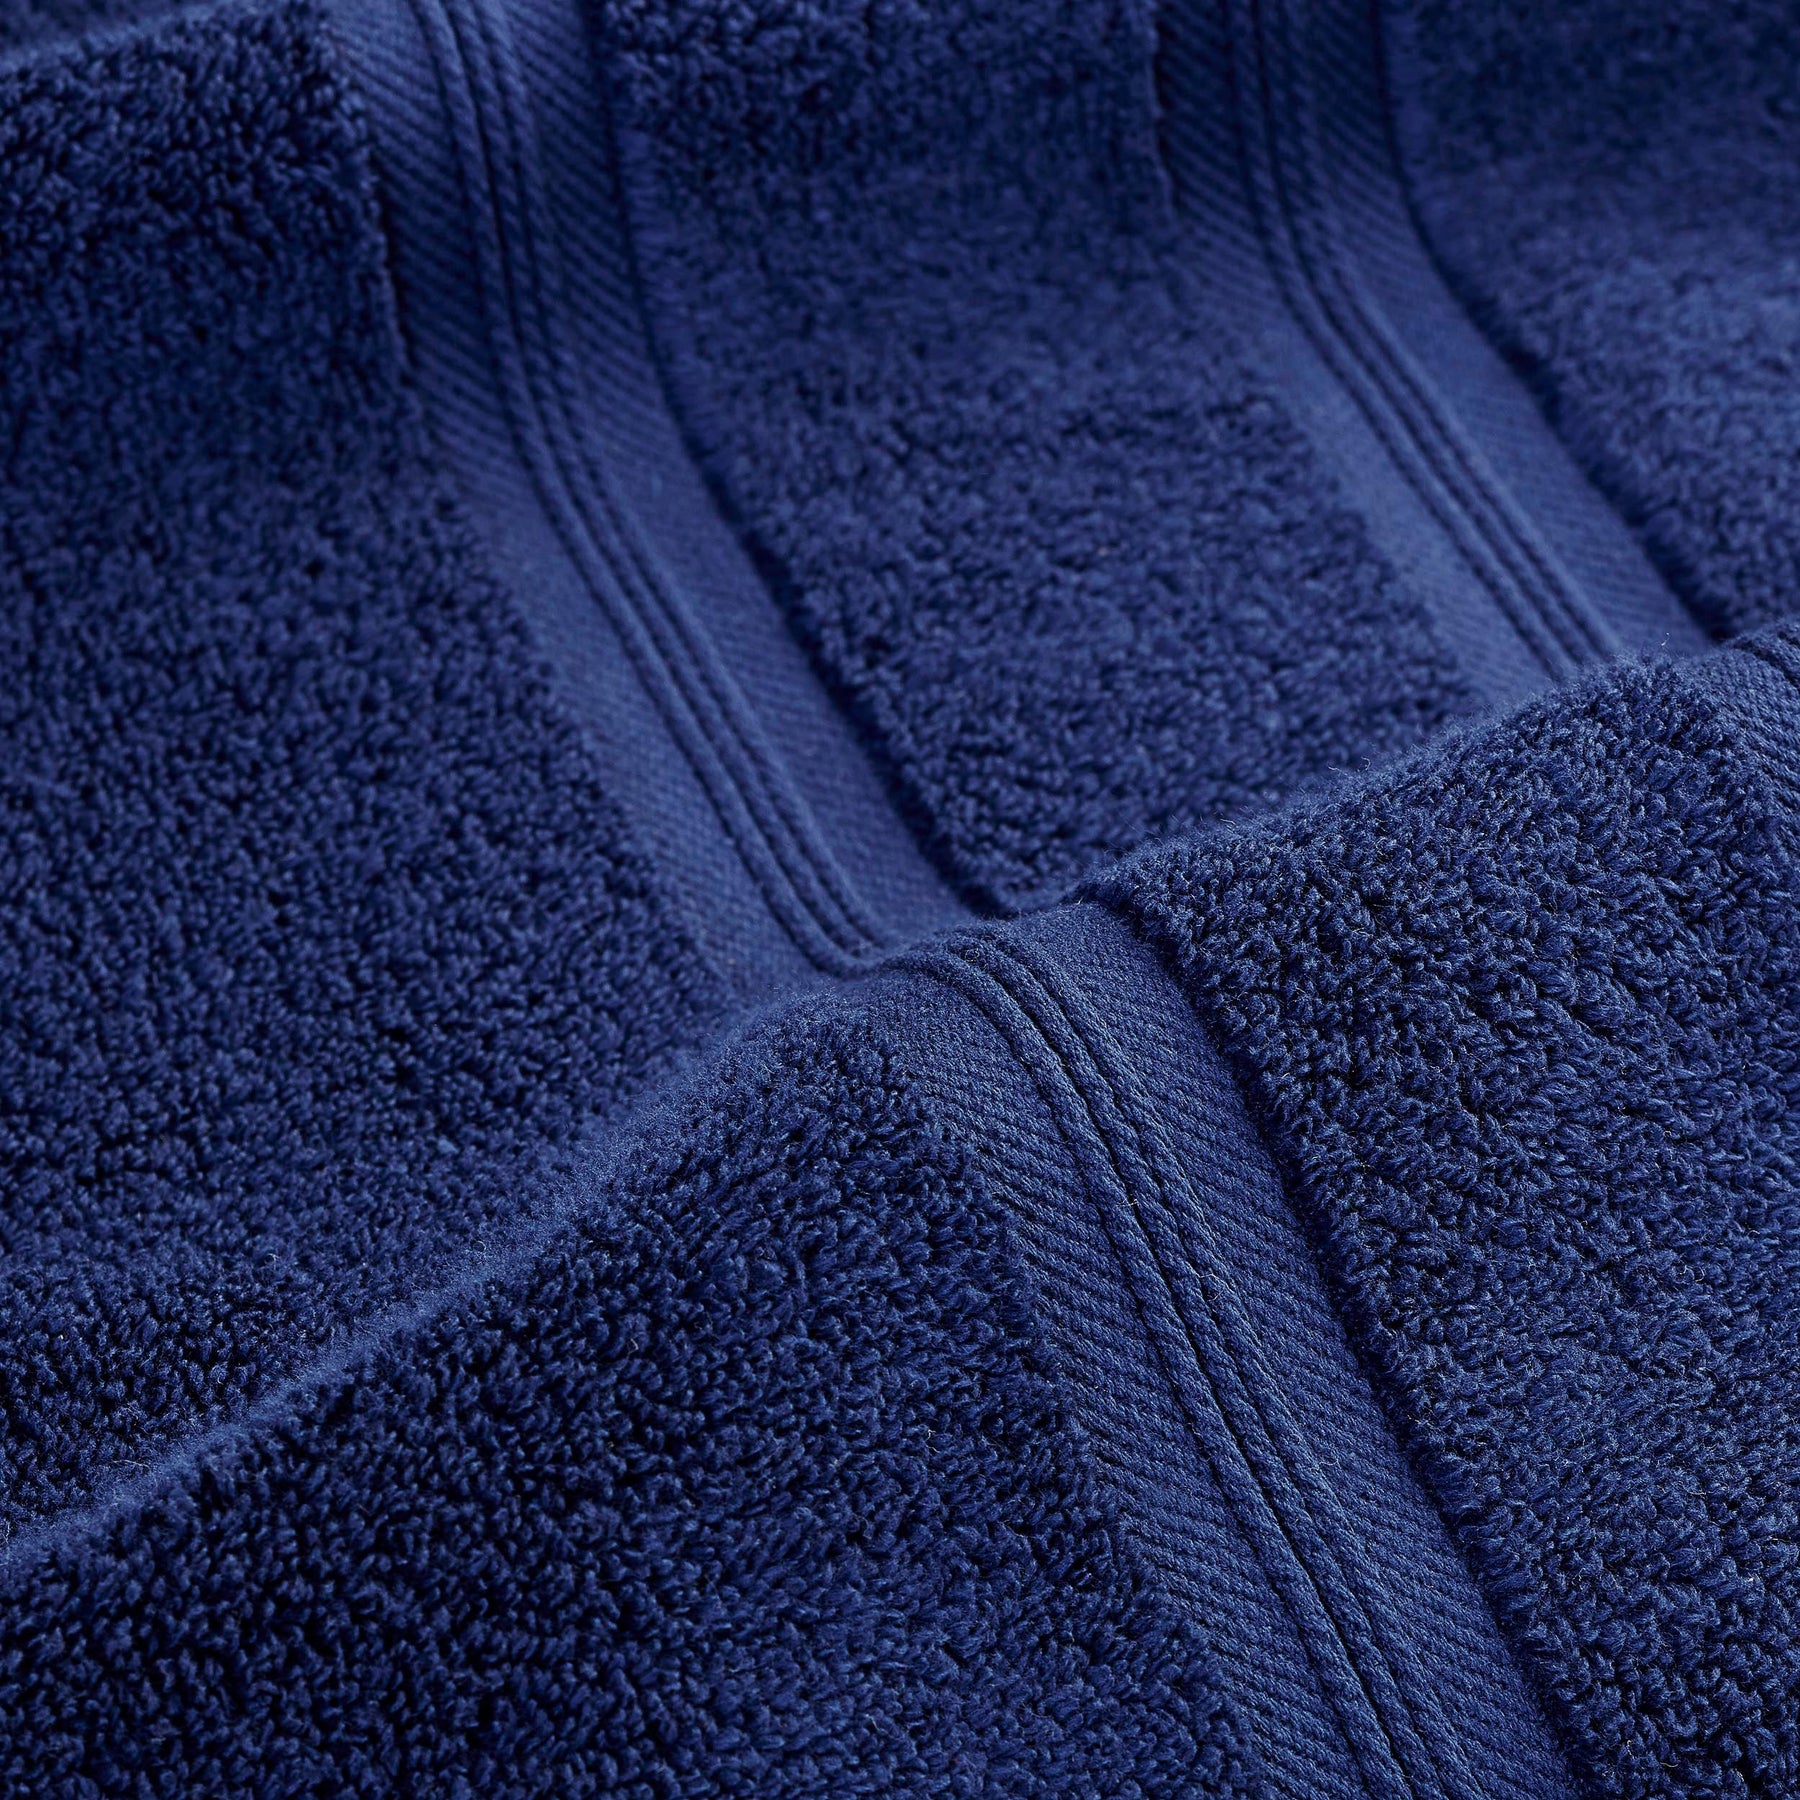  Superior Smart Dry Zero Twist Cotton 6-Piece Hand Towel Set - Navy Blue